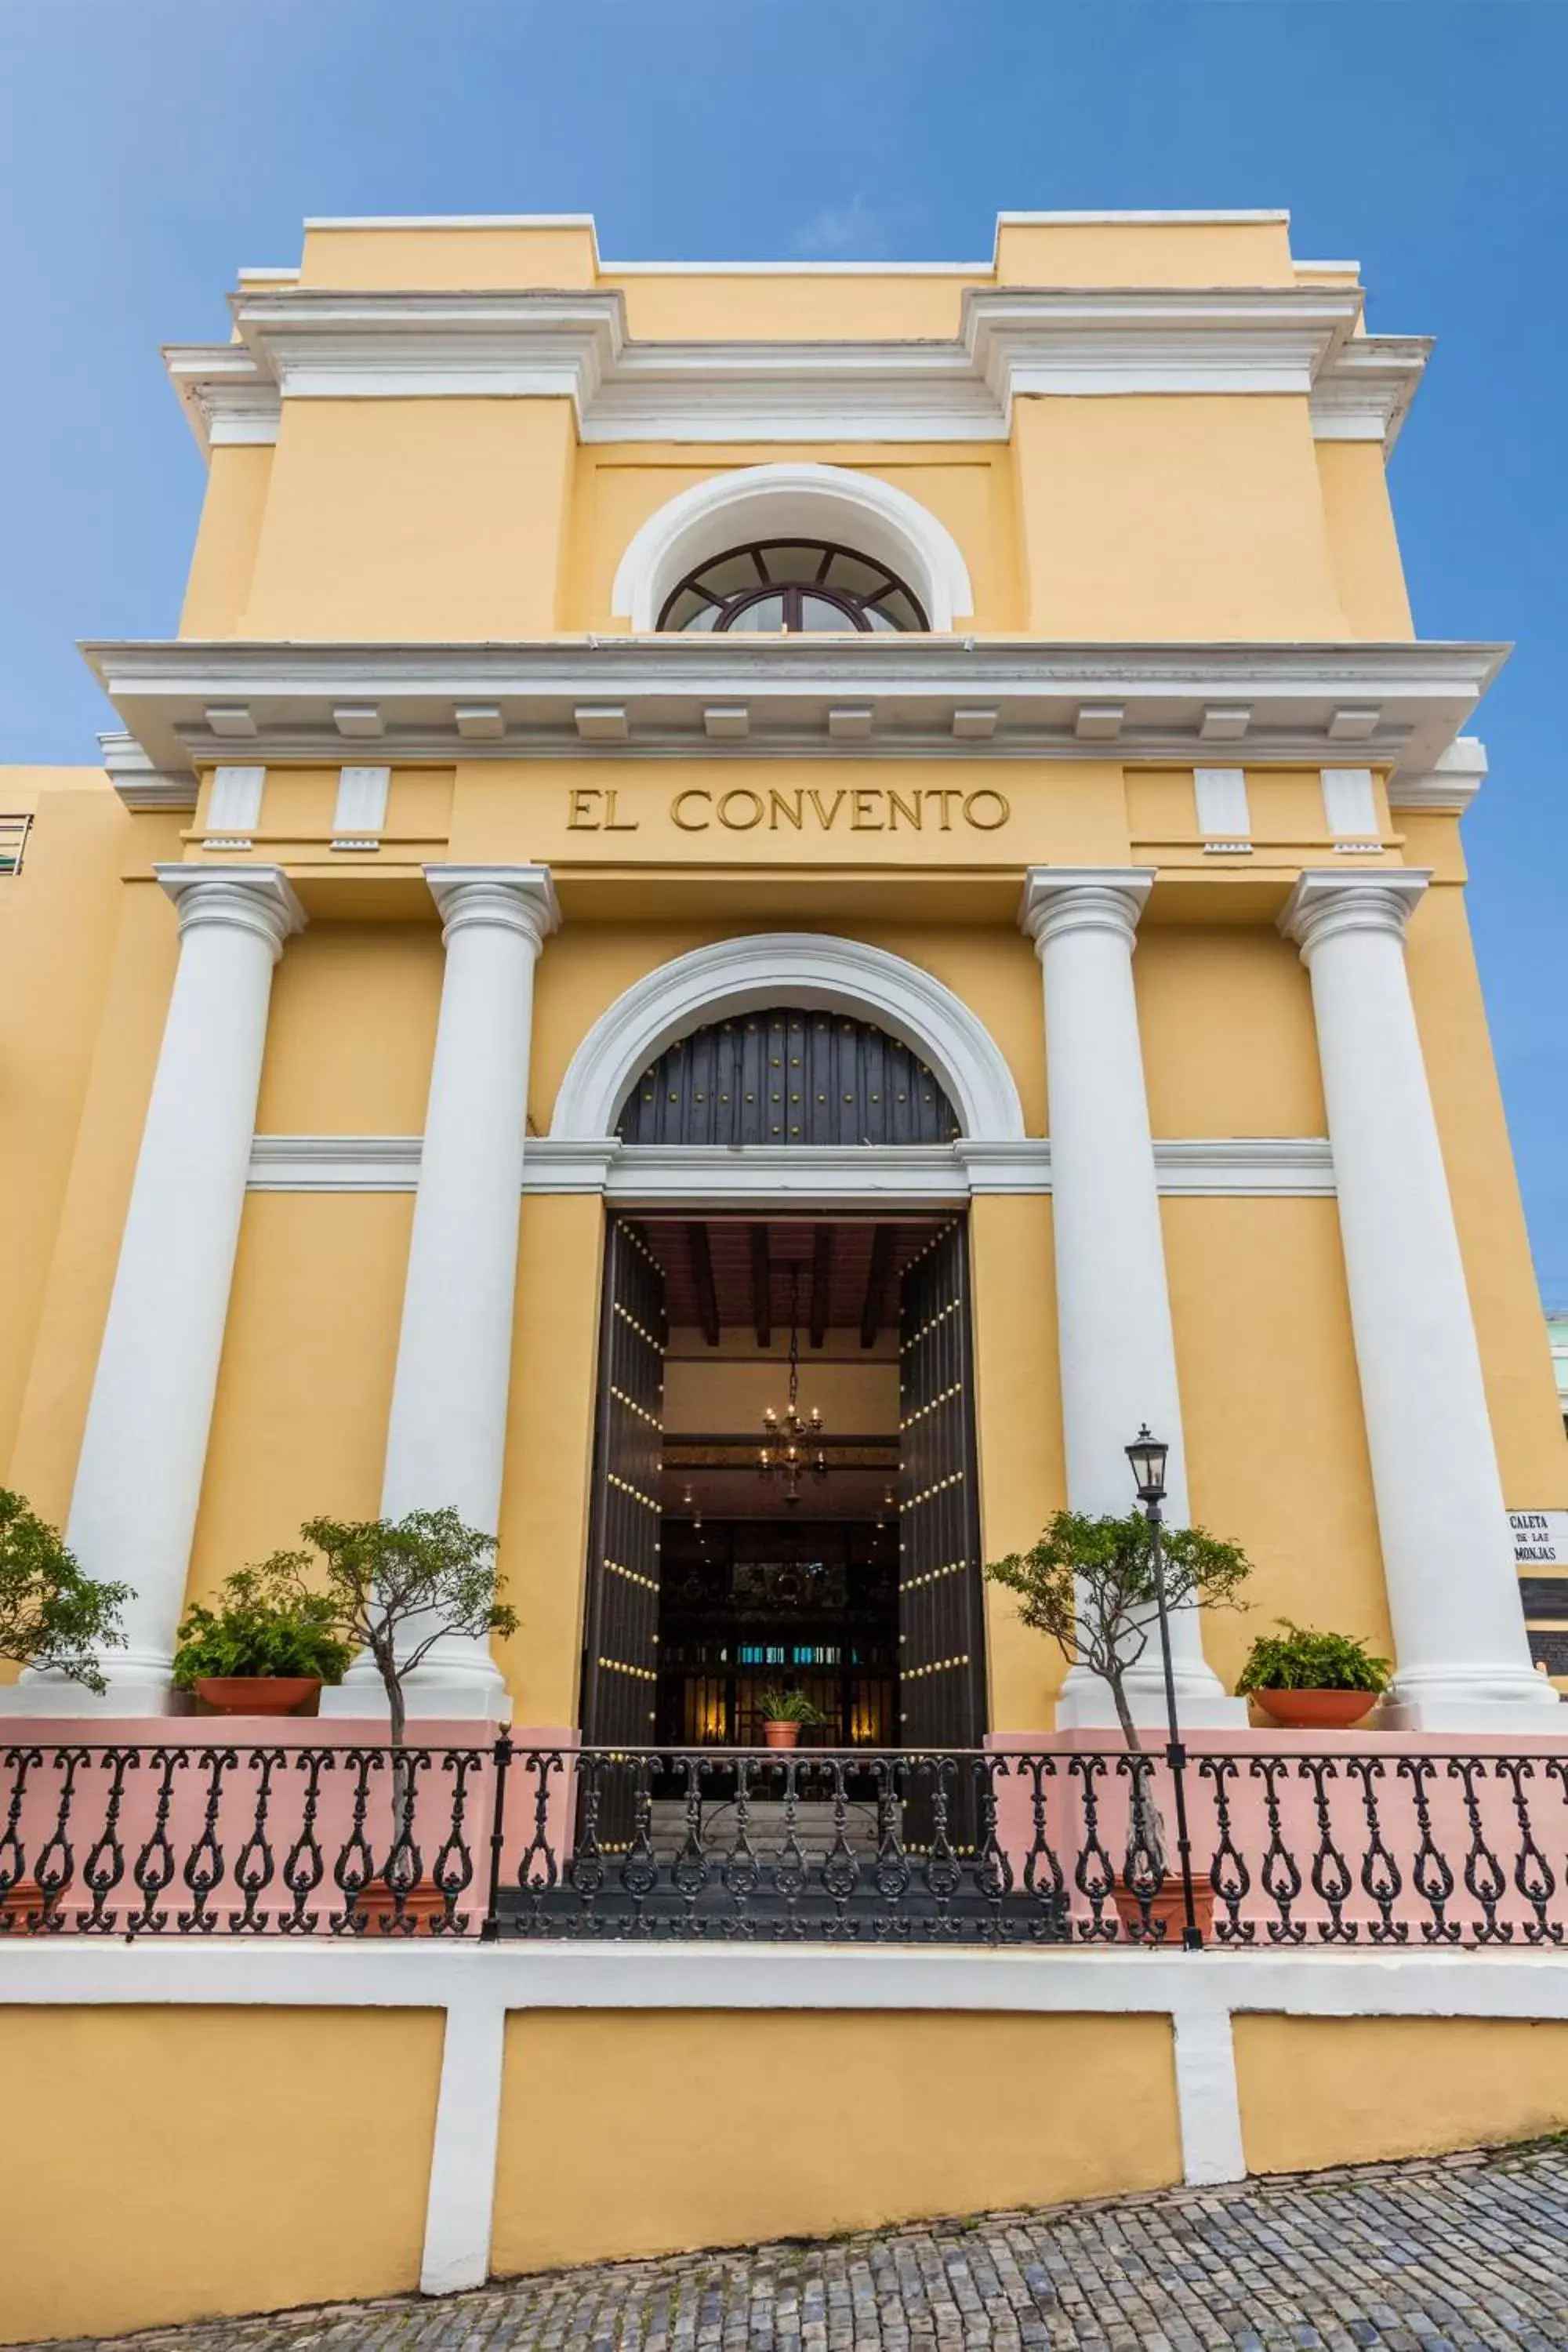 Facade/entrance in Hotel El Convento